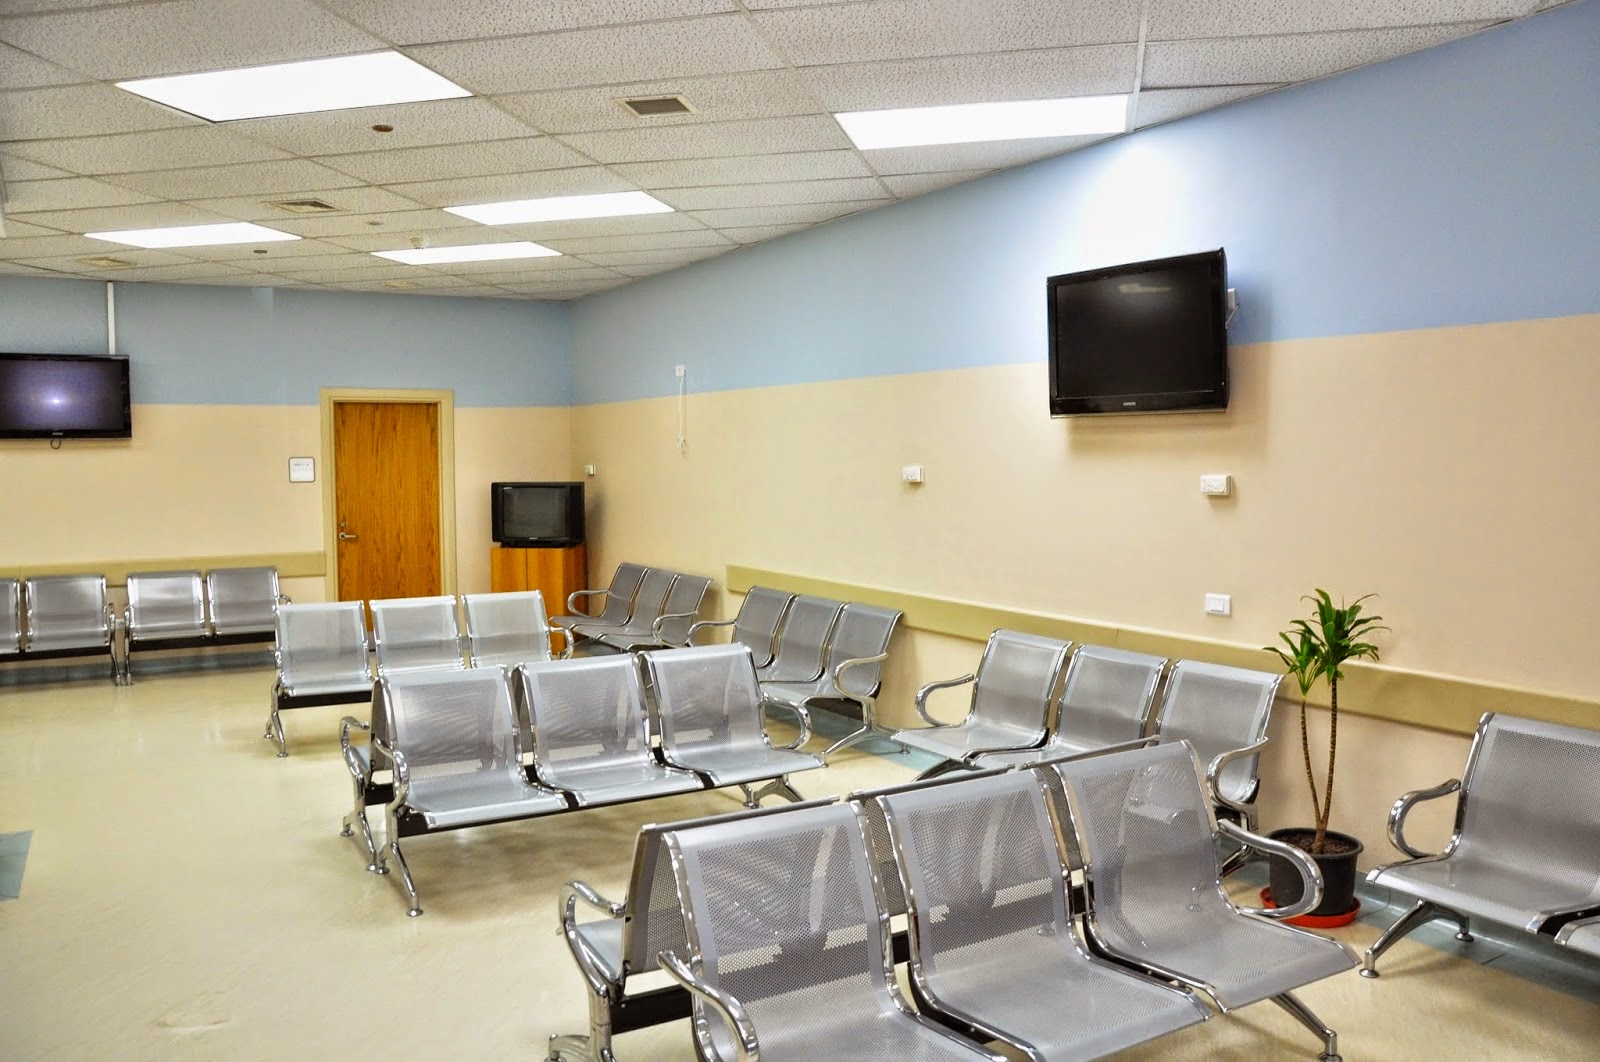 Tư vấn chọn ghế băng chờ cho bệnh viện, phòng khám - ảnh 1